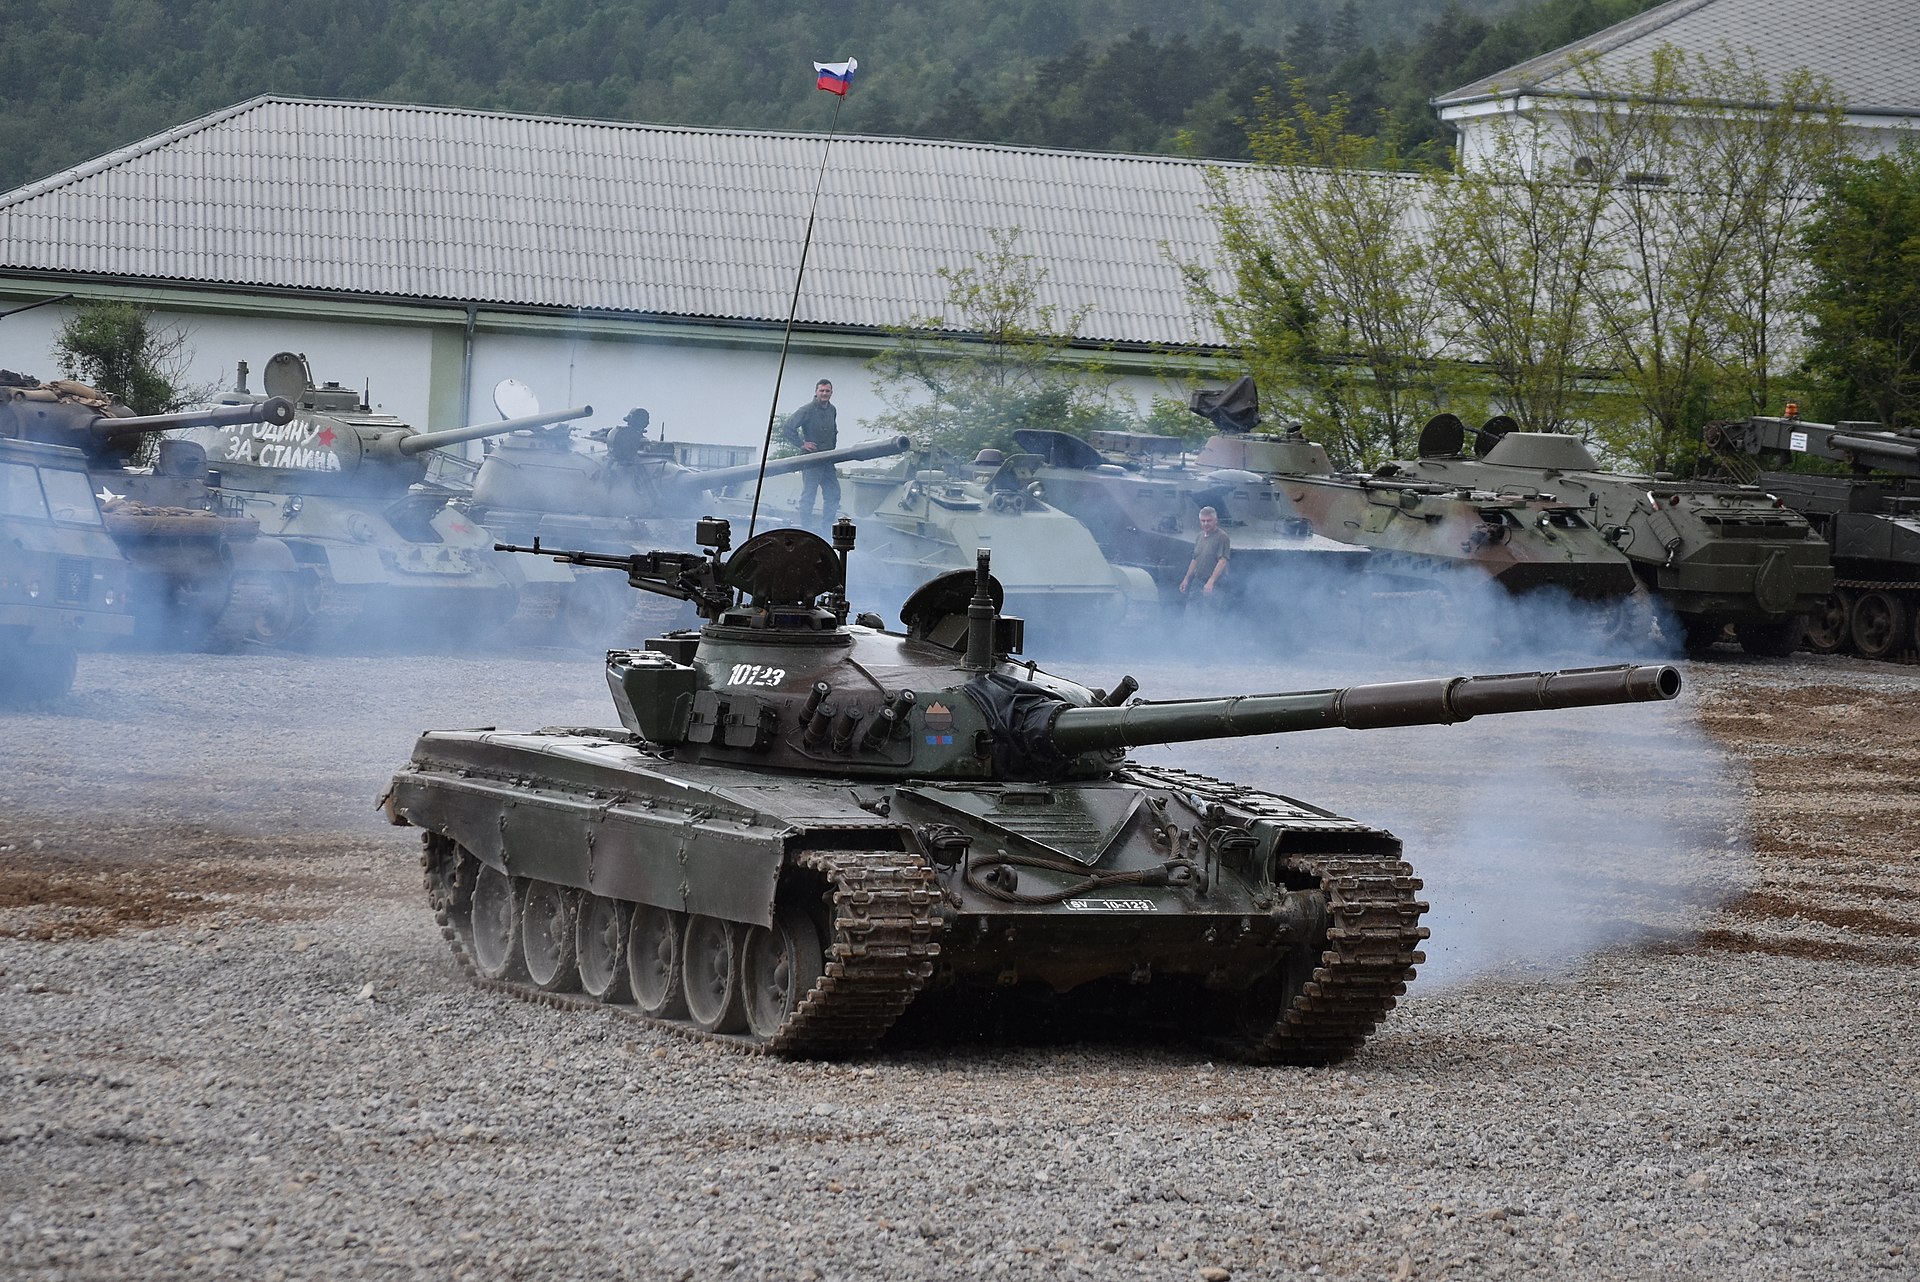 M-84 Slovenske vojske Vir: Wikipedia